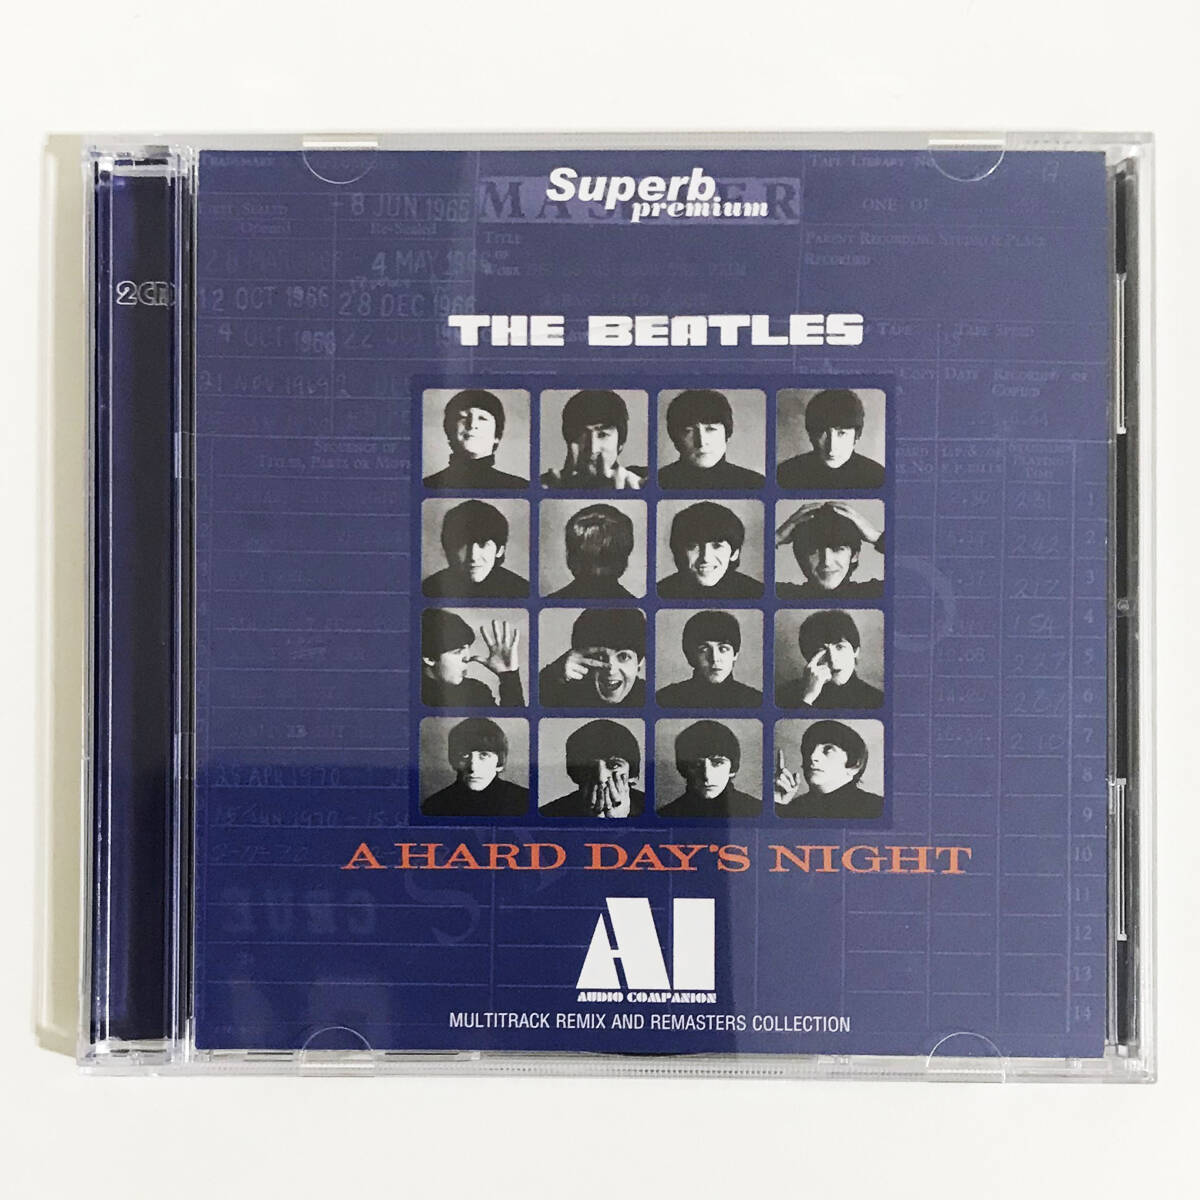  【送料無料！】THE BEATLES ザ・ビートルズ「A HARD DAY'S NIGHT : AI - AUDIO COMPANION (2CD)」Superb Premium_画像2